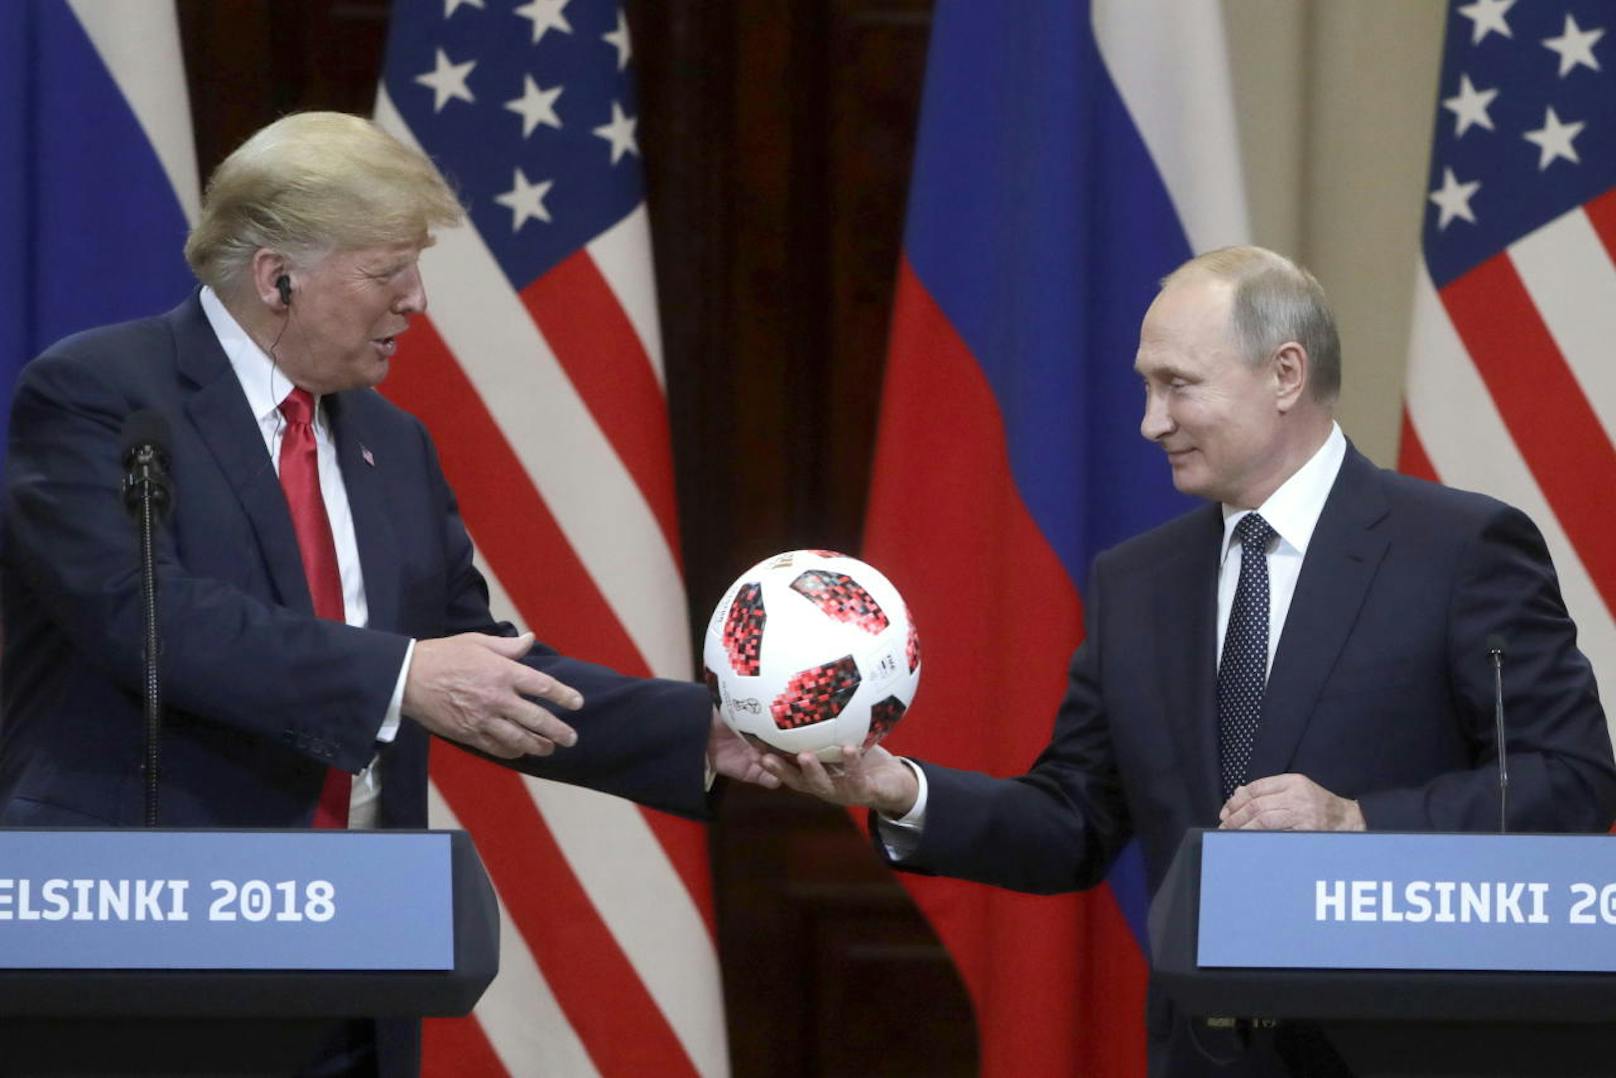 Als Gastgeberland der Fußball-WM gab Putin den Ball an Trump und wünschte den USA für ihr Ausrichten der Fußball-WM 2026 alles Gute.